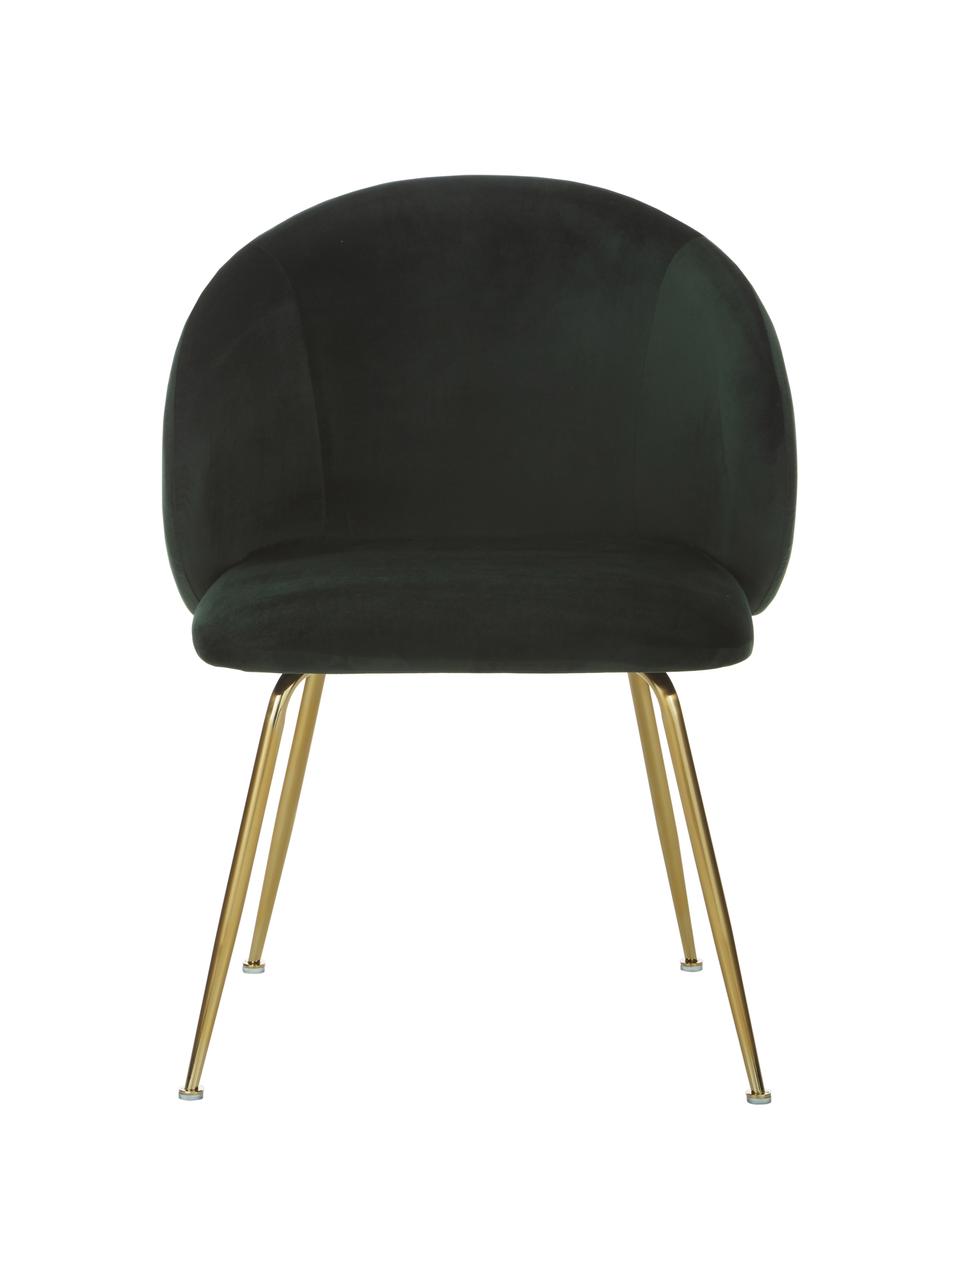 Fluwelen stoelen Luisa in donkergroen, 2 stuks, Bekleding: fluweel (100% polyester), Poten: gepoedercoat metaal, Fluweel donkergroen, goudkleurig, B 59 x D 58 cm